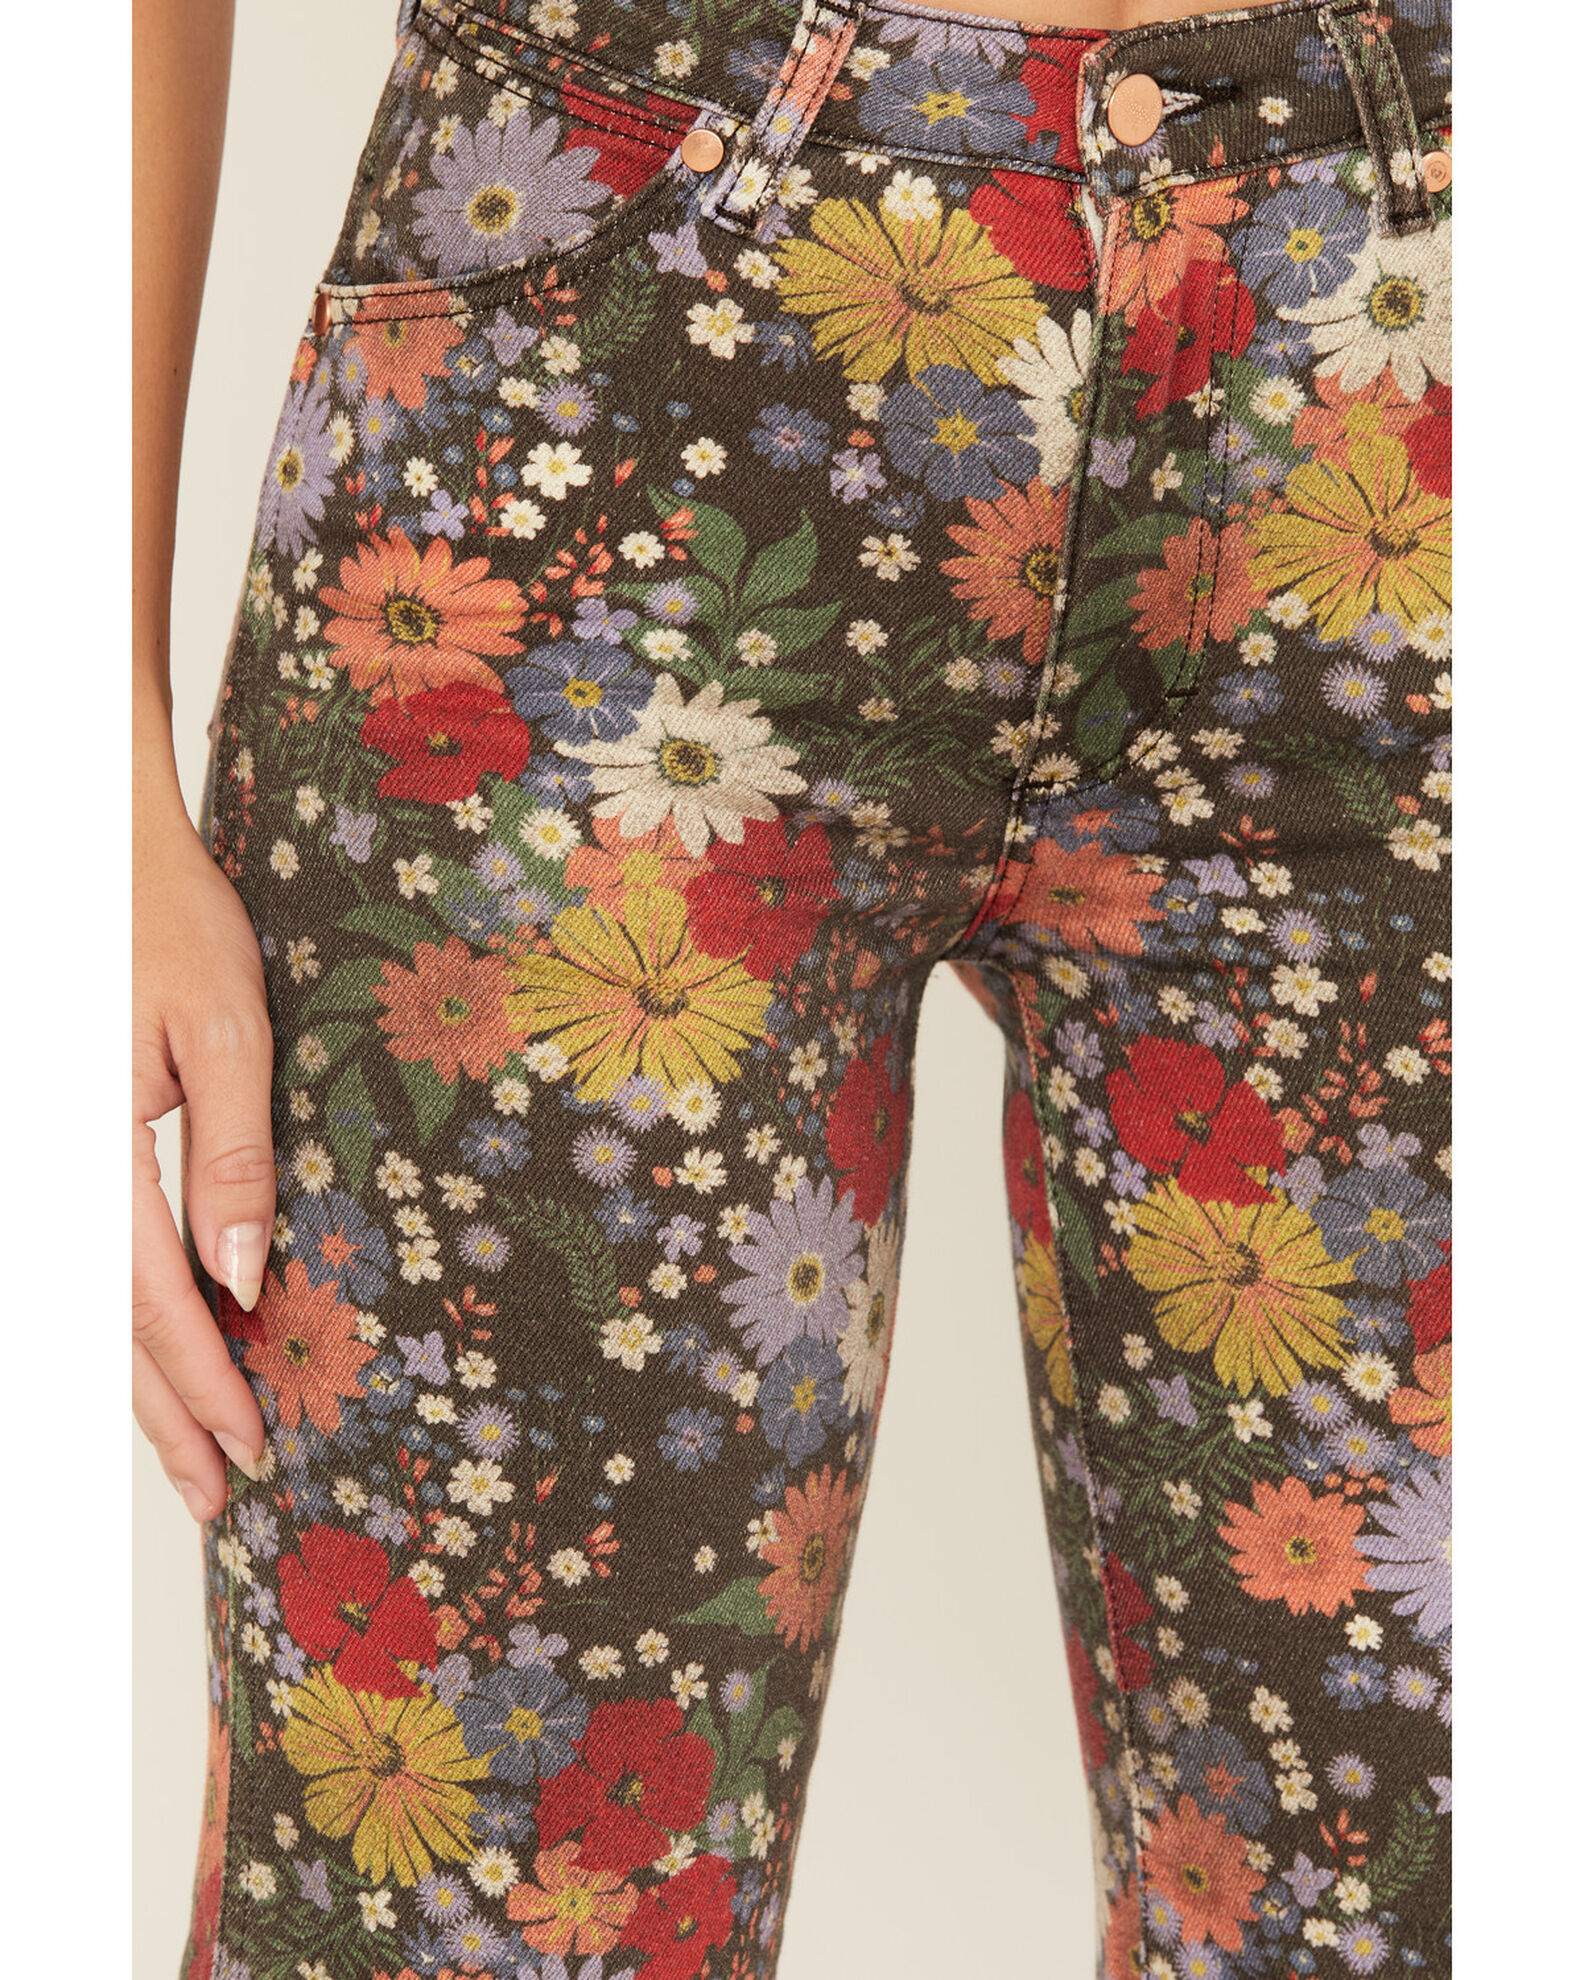 Product Name: Wrangler Women's Bloom Print Wanderer Flare Jeans